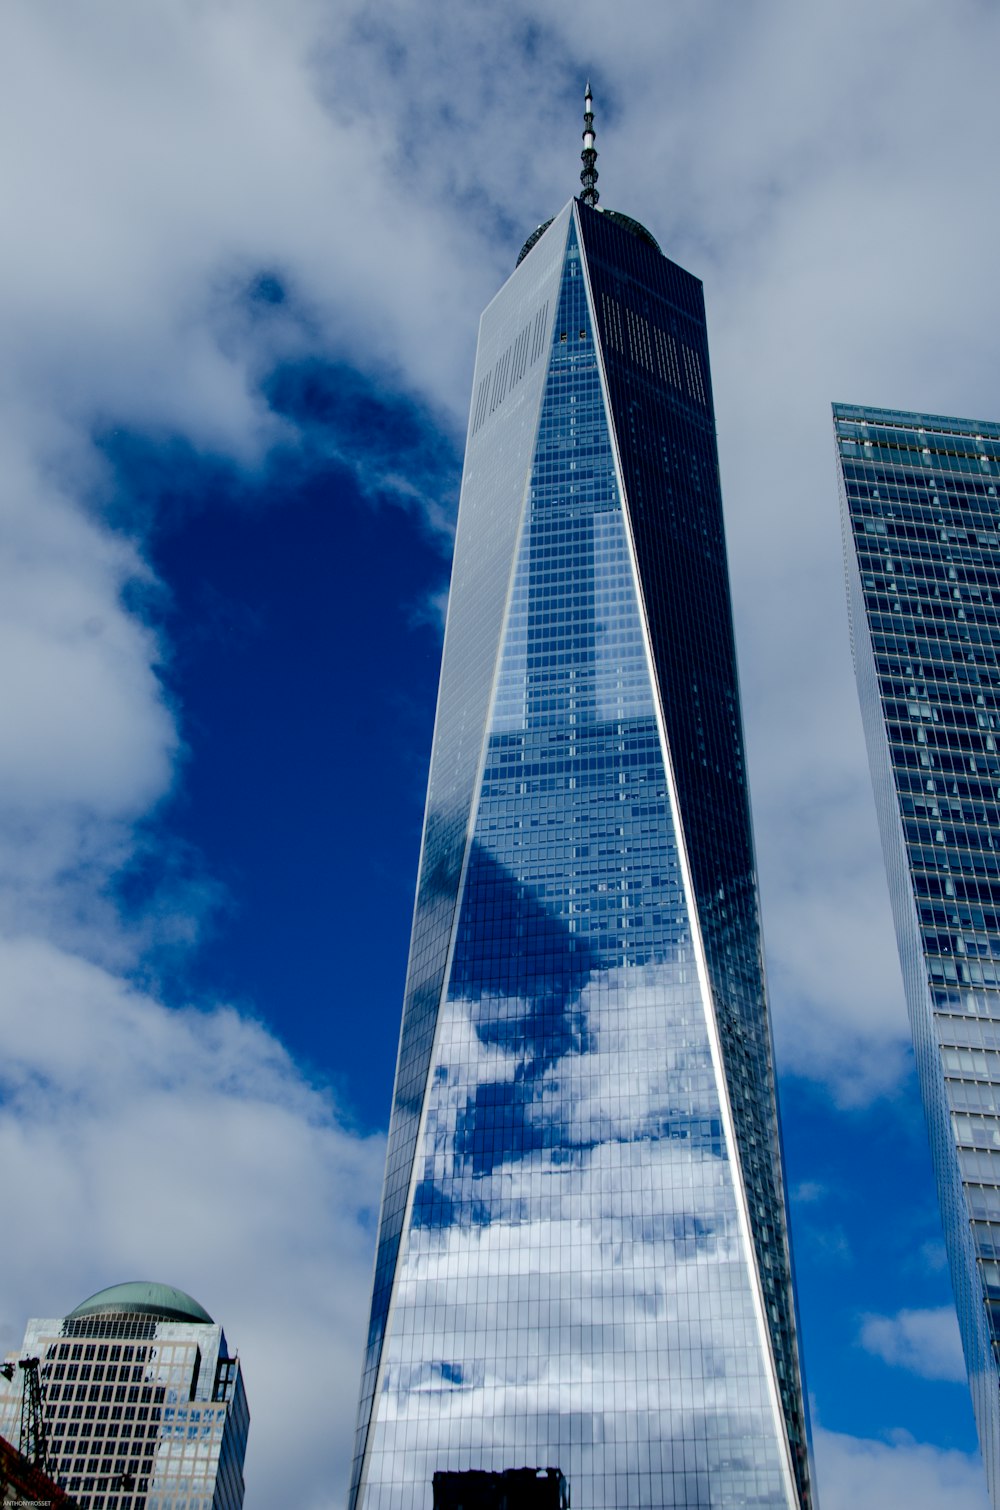 nuages blancs au-dessus d’un immeuble de grande hauteur à façade en verre